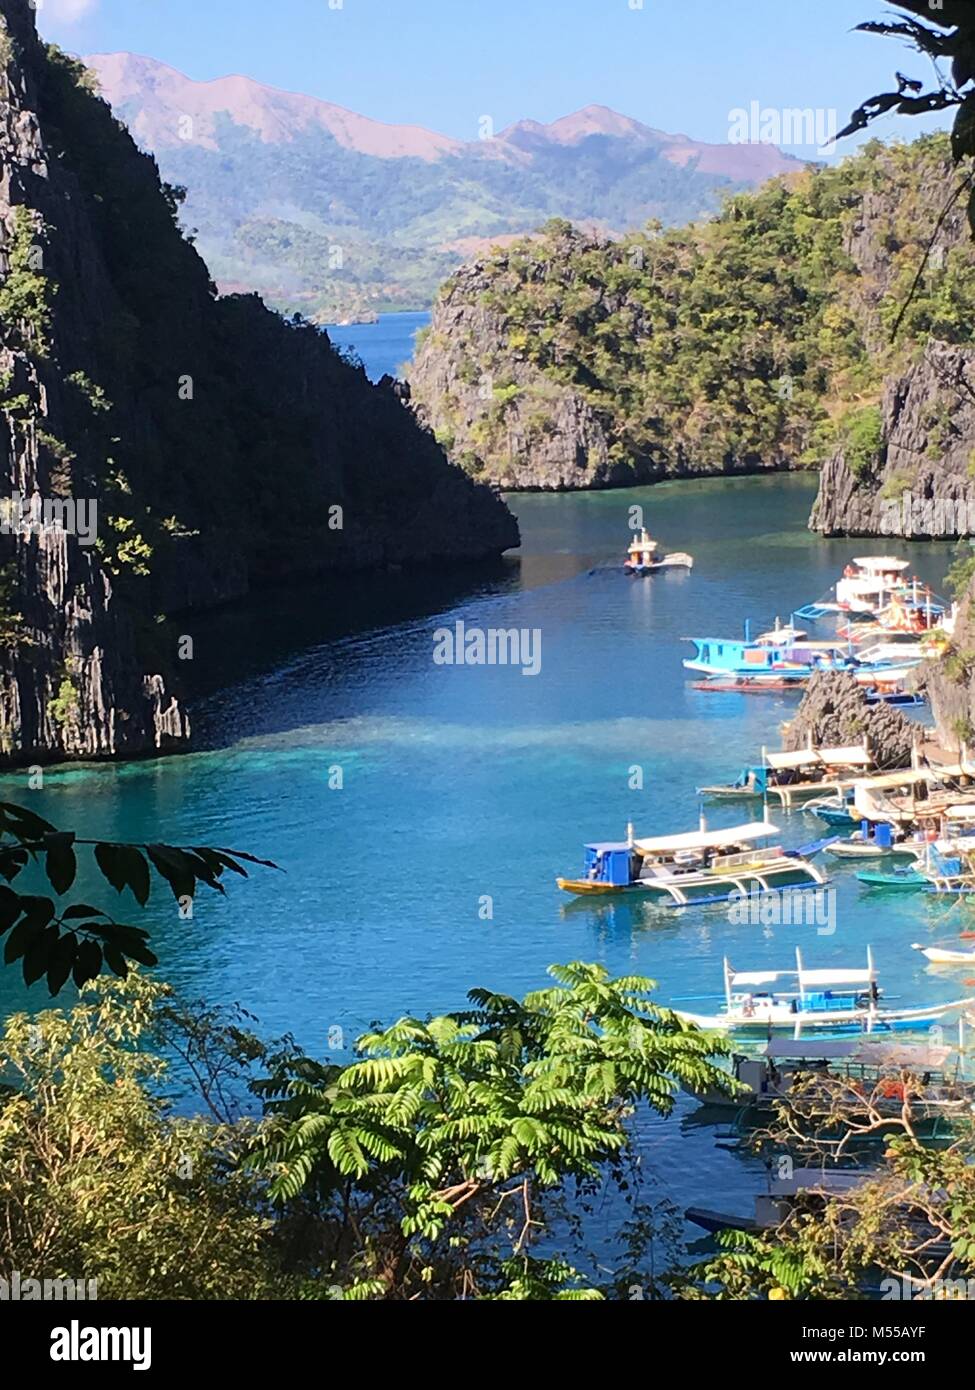 La bellezza dell'isola di Coron, Filippine Foto Stock